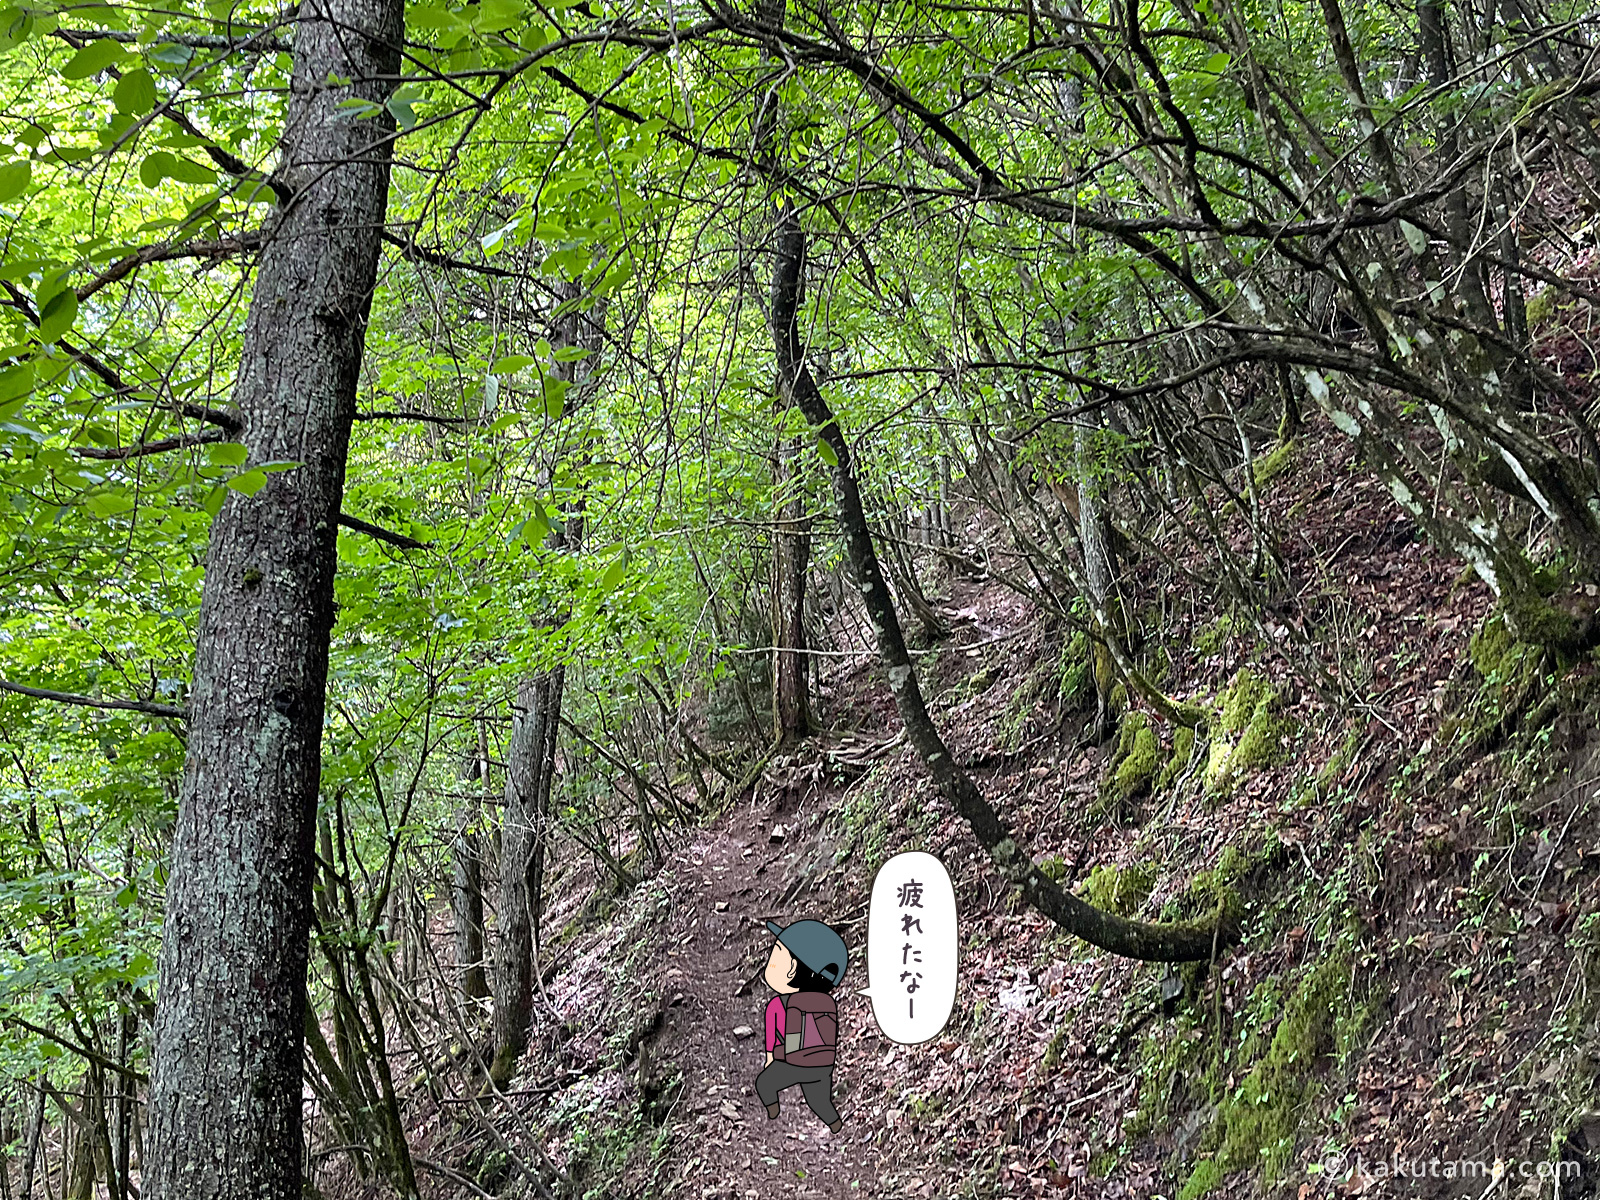 滝子山山頂へ向けてひたすら登る写真と登山者のイラスト